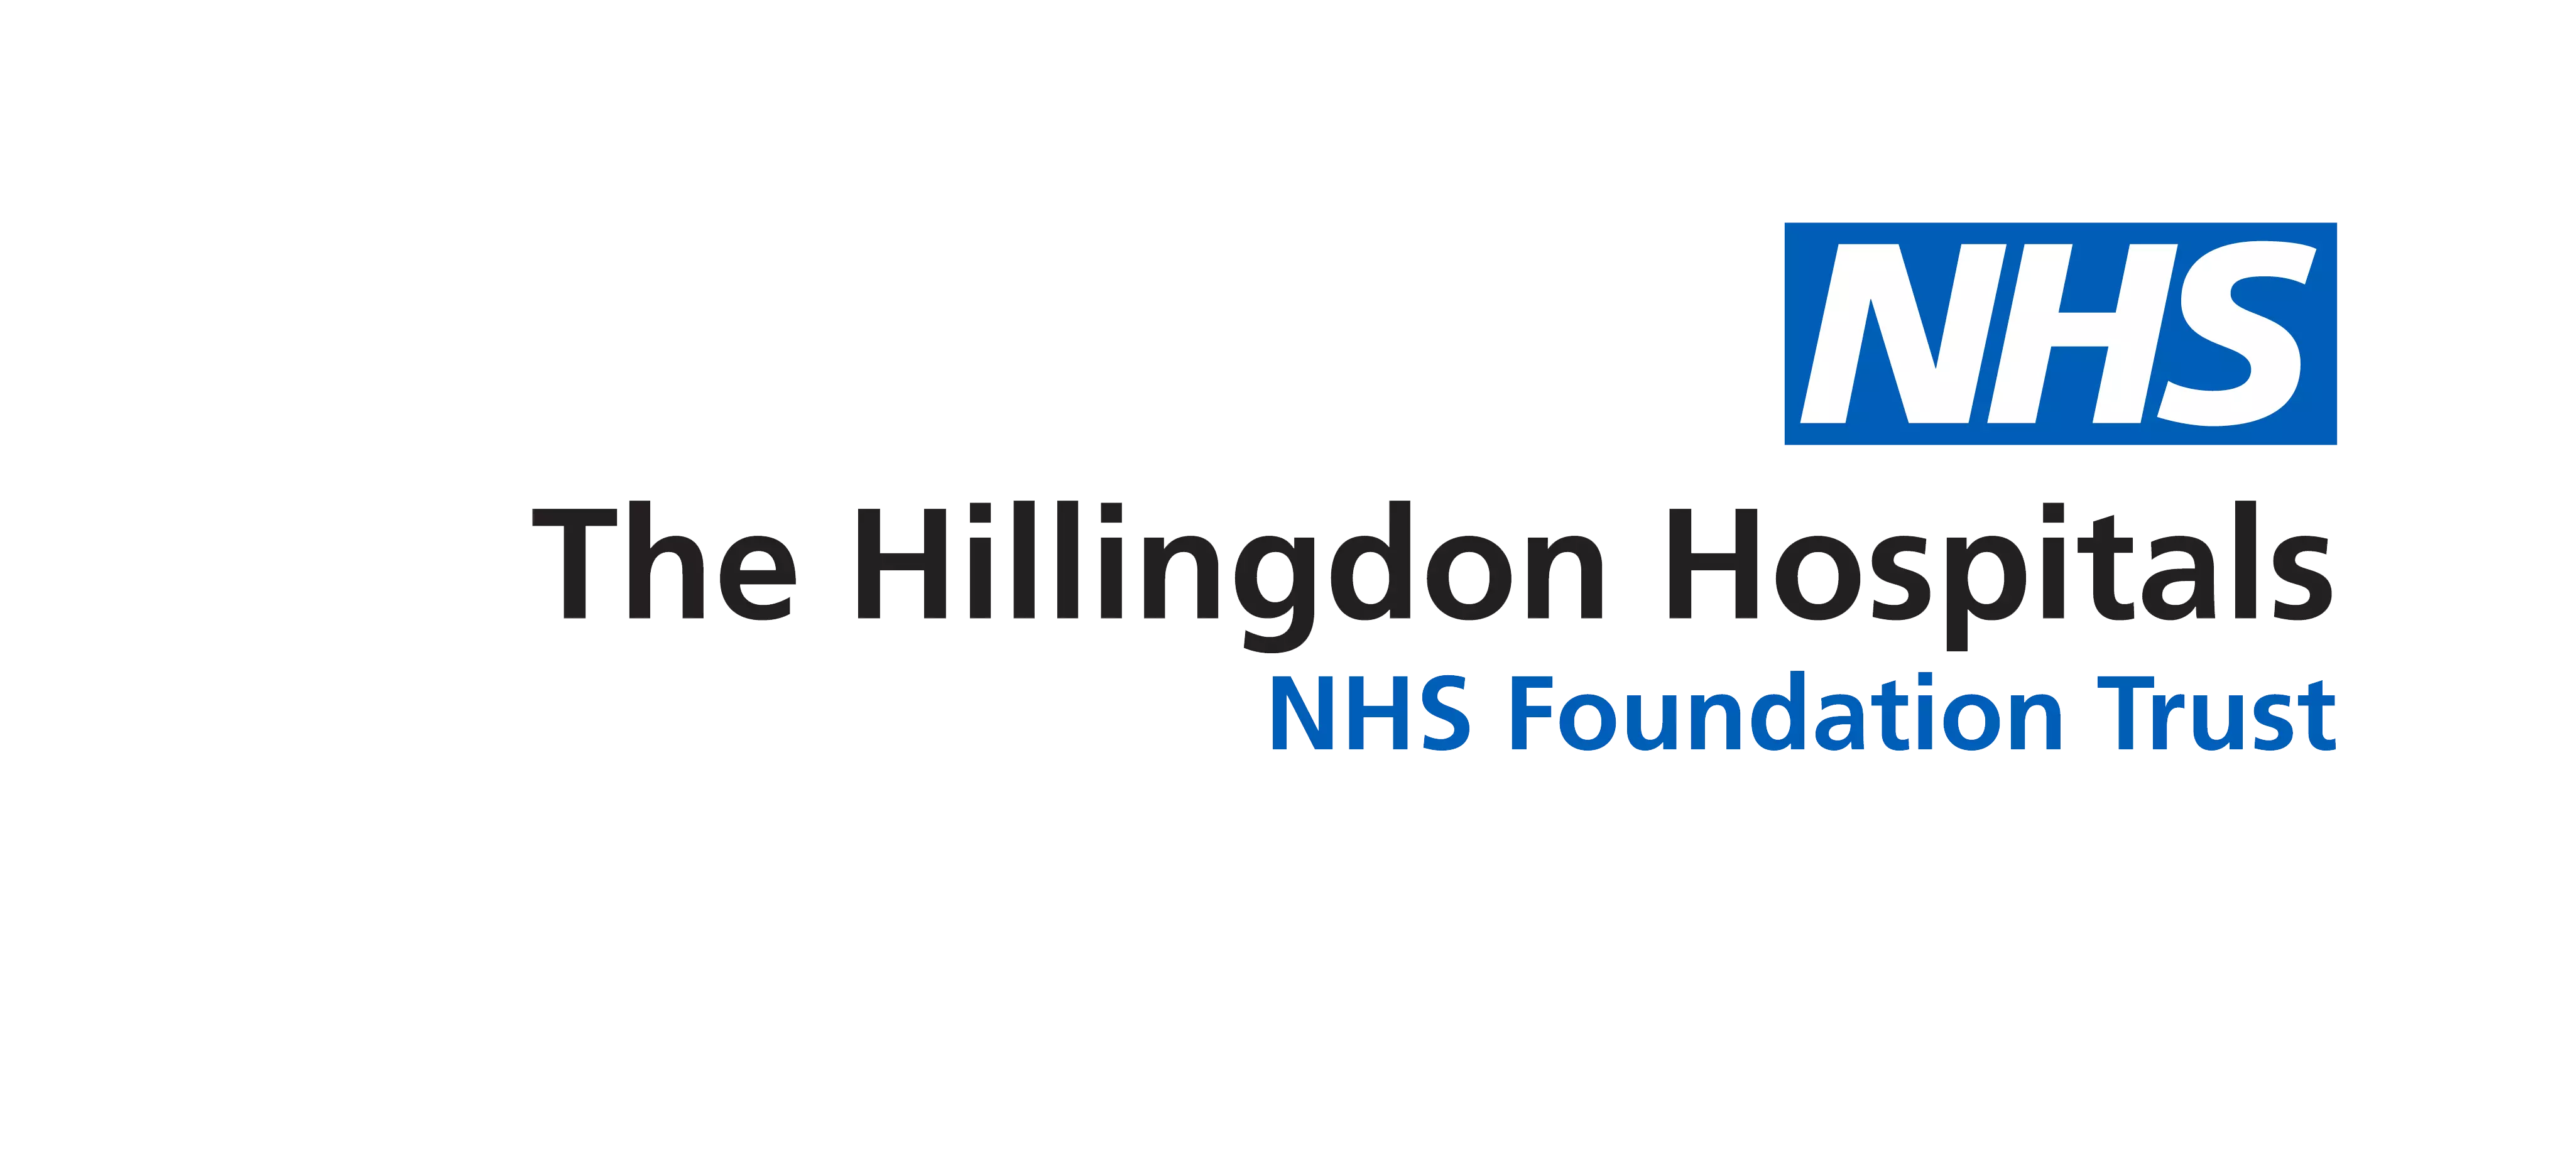 hillingdon hospital nhs ft